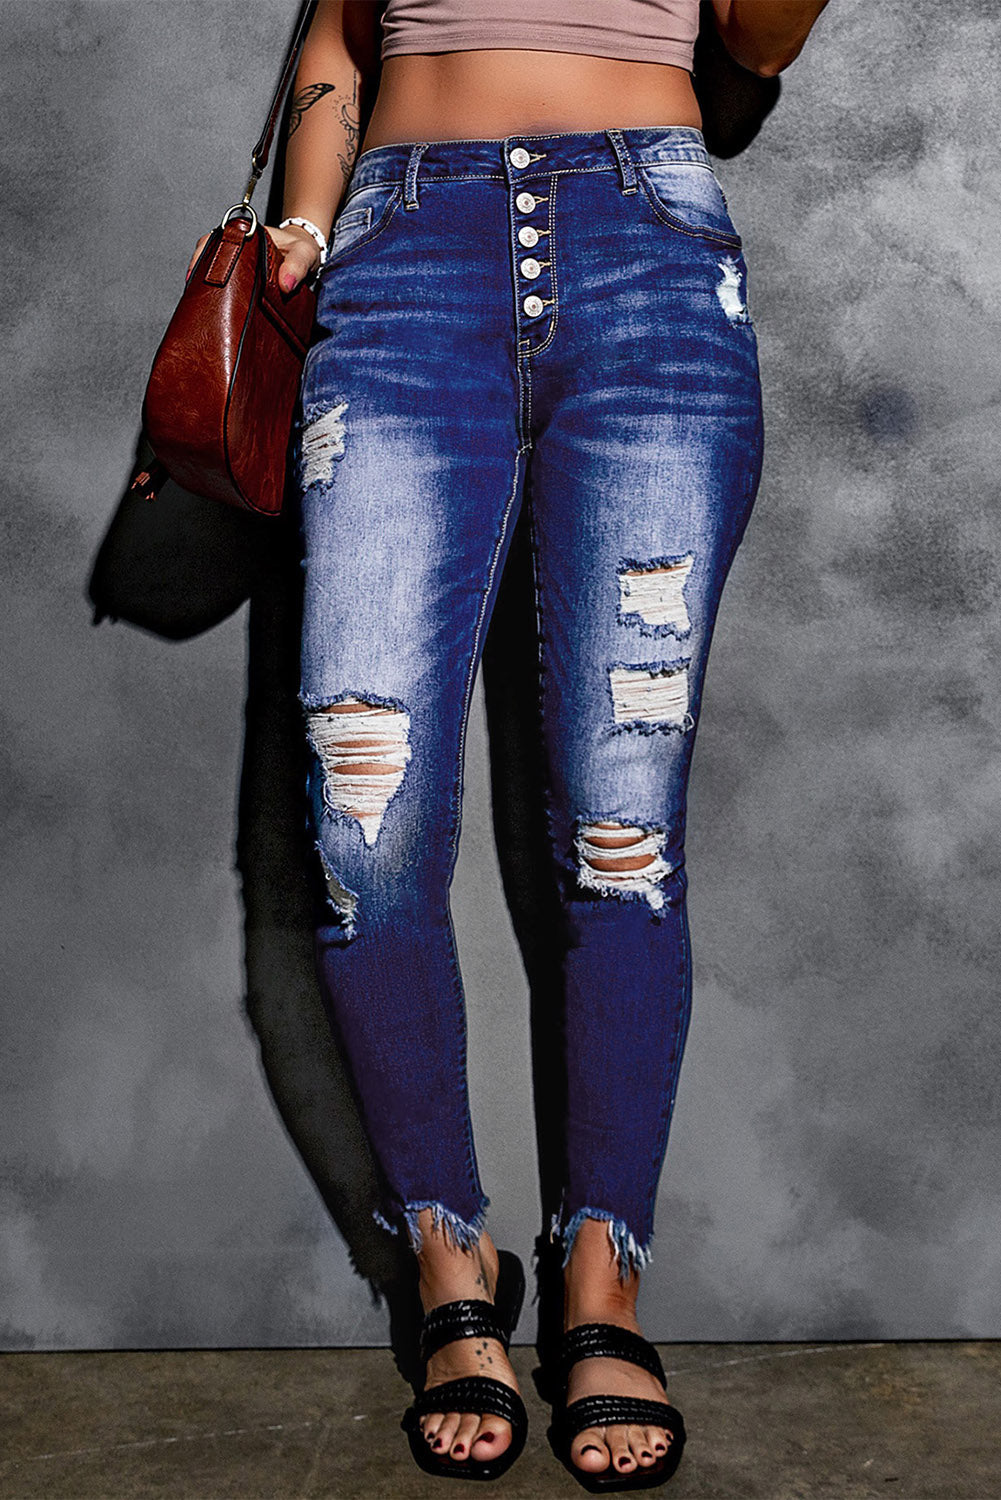 Blaue Skinny-Jeans mit hohem Bund und Knopfleiste vorne und ausgefransten Knöcheln